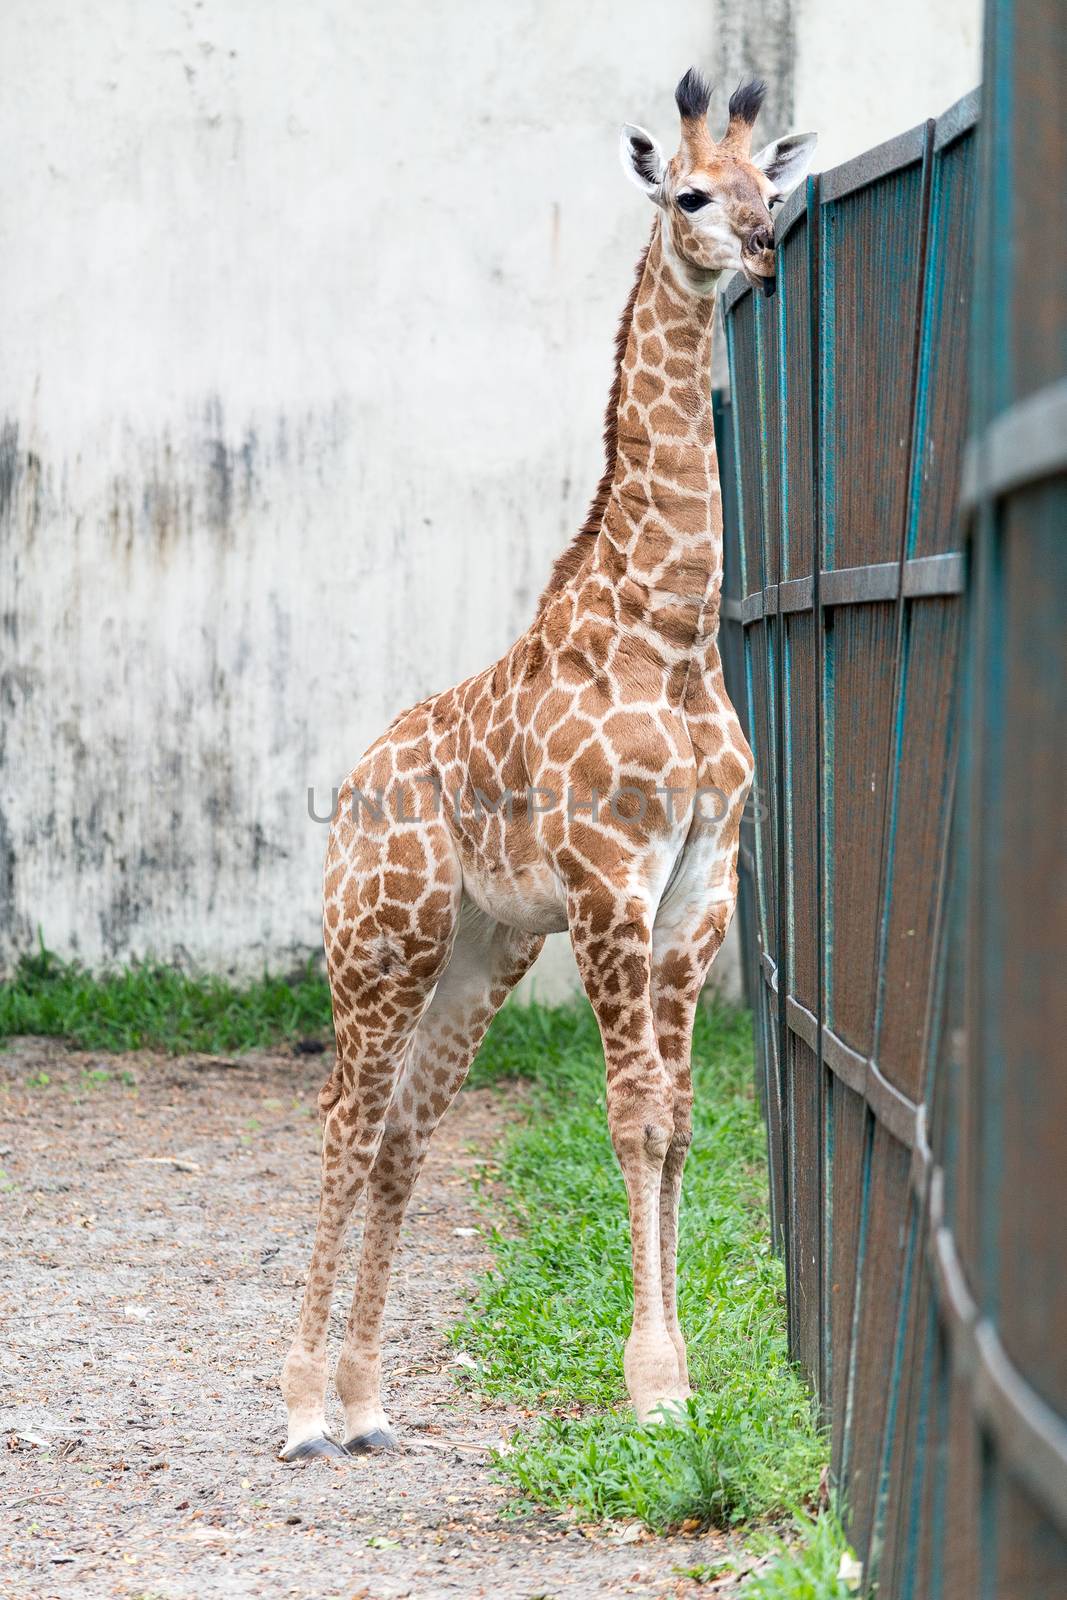 Giraffe by sohel.parvez@hotmail.com